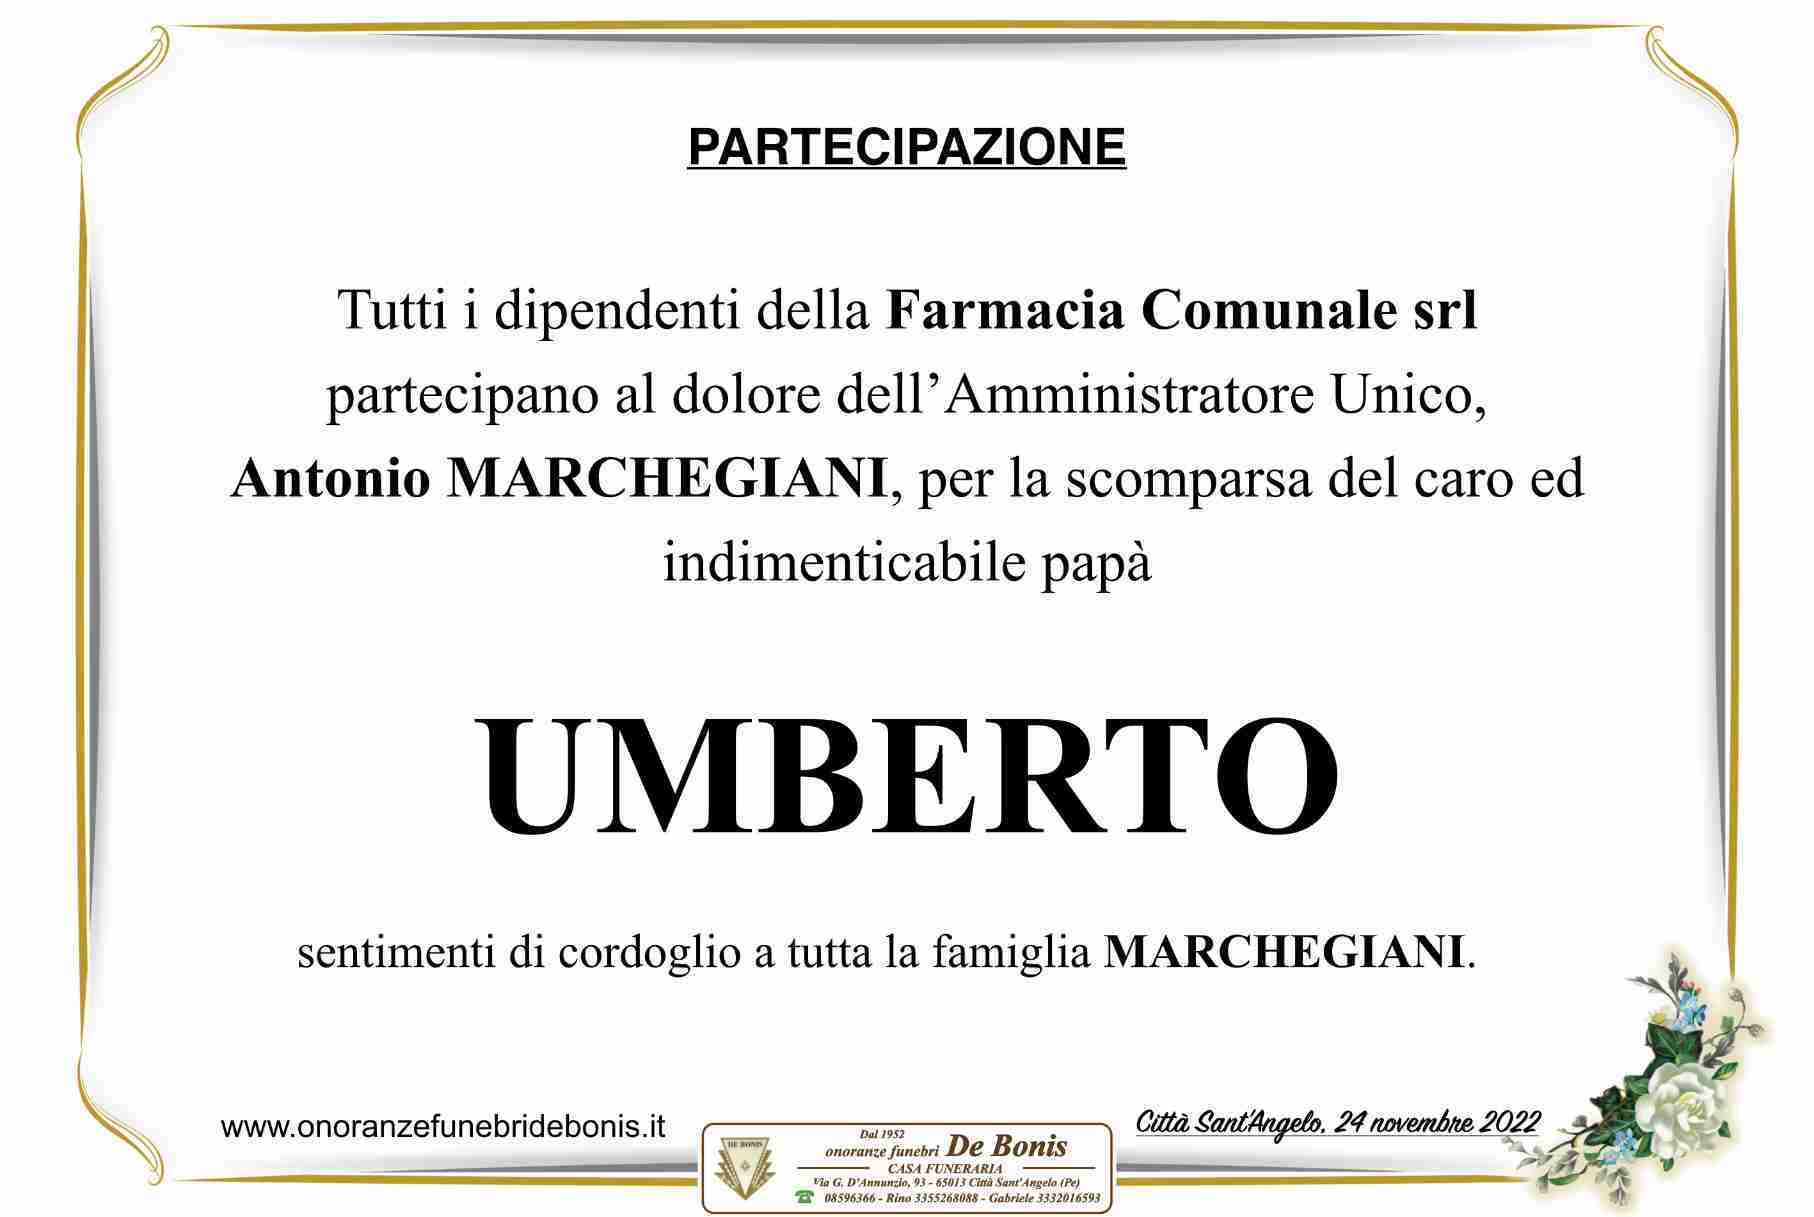 Umberto Marchegiani